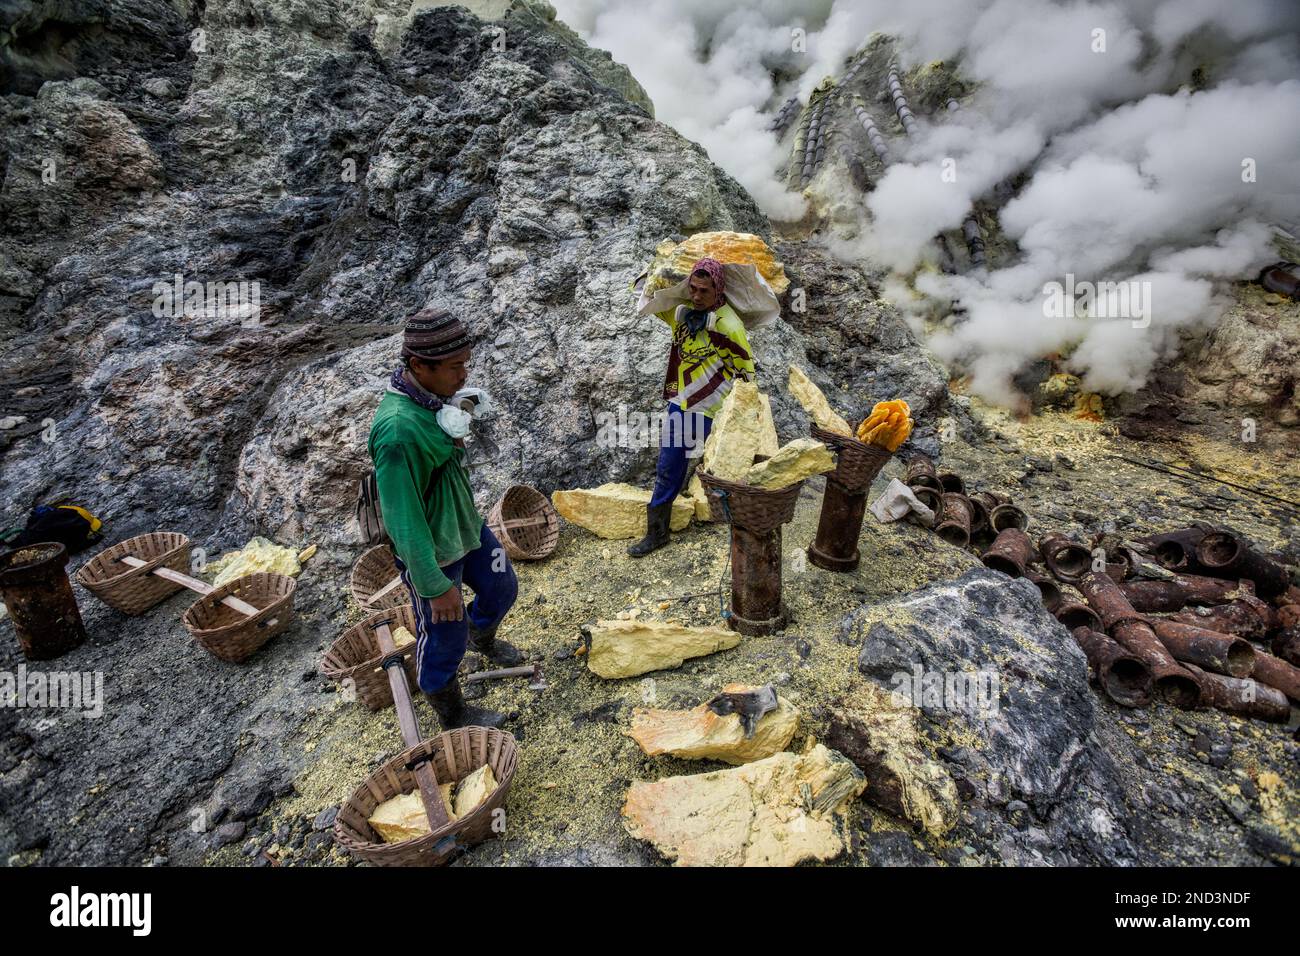 Ijen sulphur mining, Java, Indonesia Stock Photo